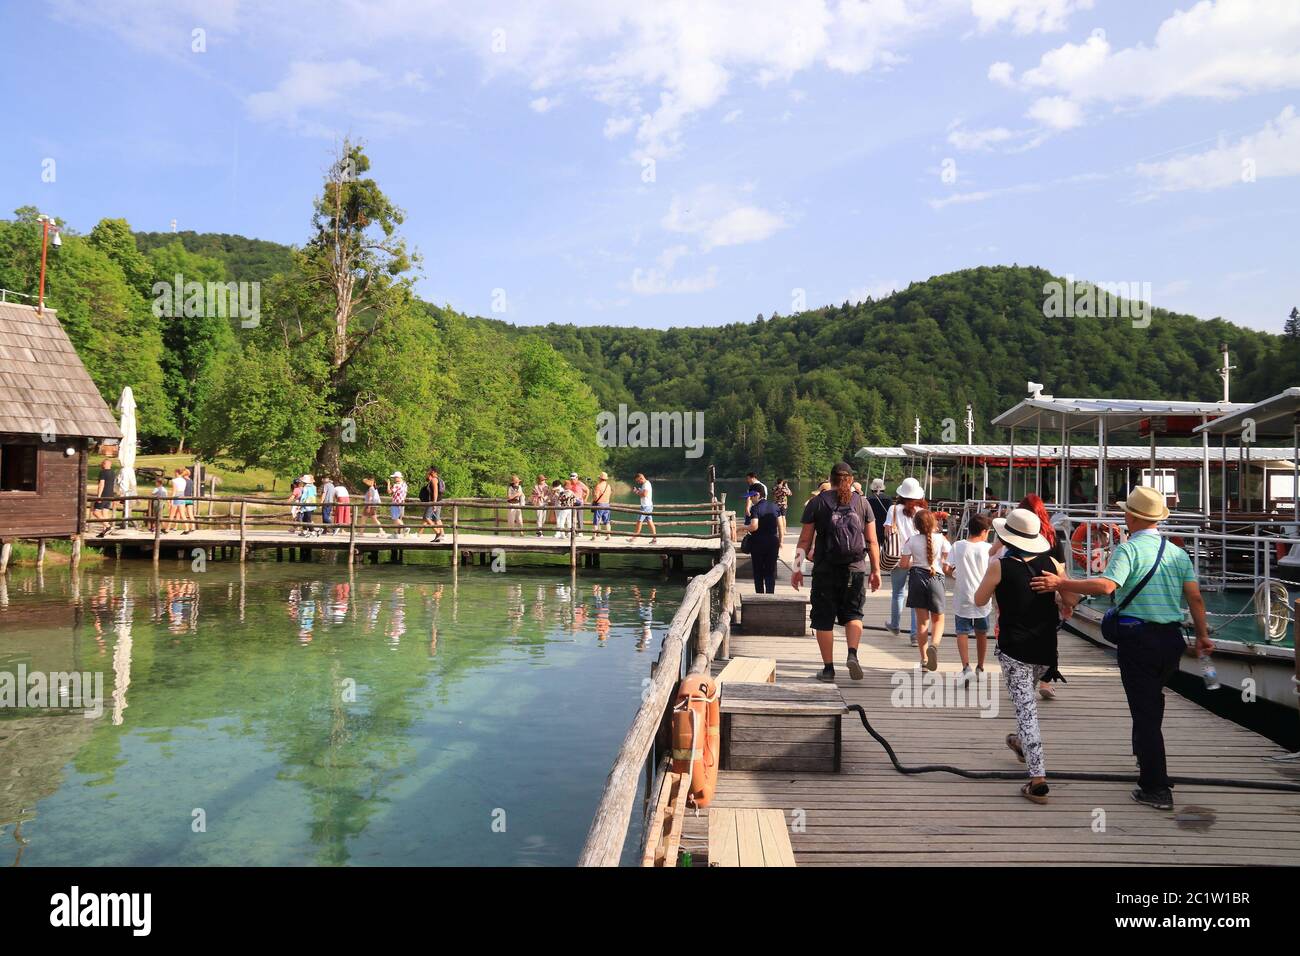 PLITVICE, CROATIE - 15 JUIN 2019 : les gens visitent le parc national des lacs de Plitvice (Plitvicka Jezera) en Croatie. Plitvice est le parc national le plus populaire Banque D'Images